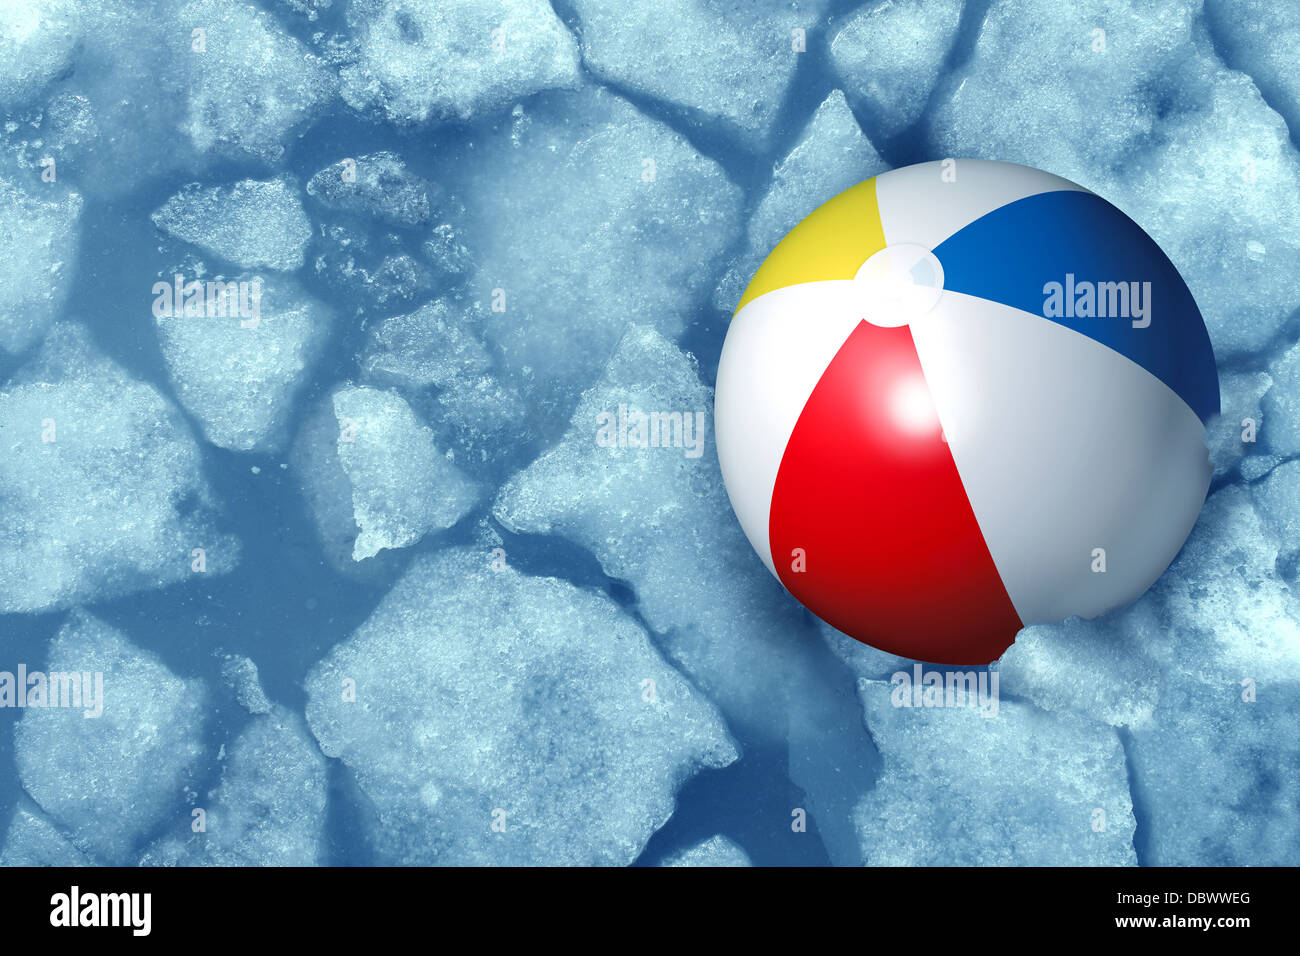 Kalter Sommer-Wetter-Konzept mit einem Kunststoff Inflatabe Wasserball stecken im gefrorenen Eis in einem eiskalten Pool als Symbol der Freizeit Aktivität Probleme durch kältere Temperaturen in den Ferien und Urlaub mit der Familie. Stockfoto